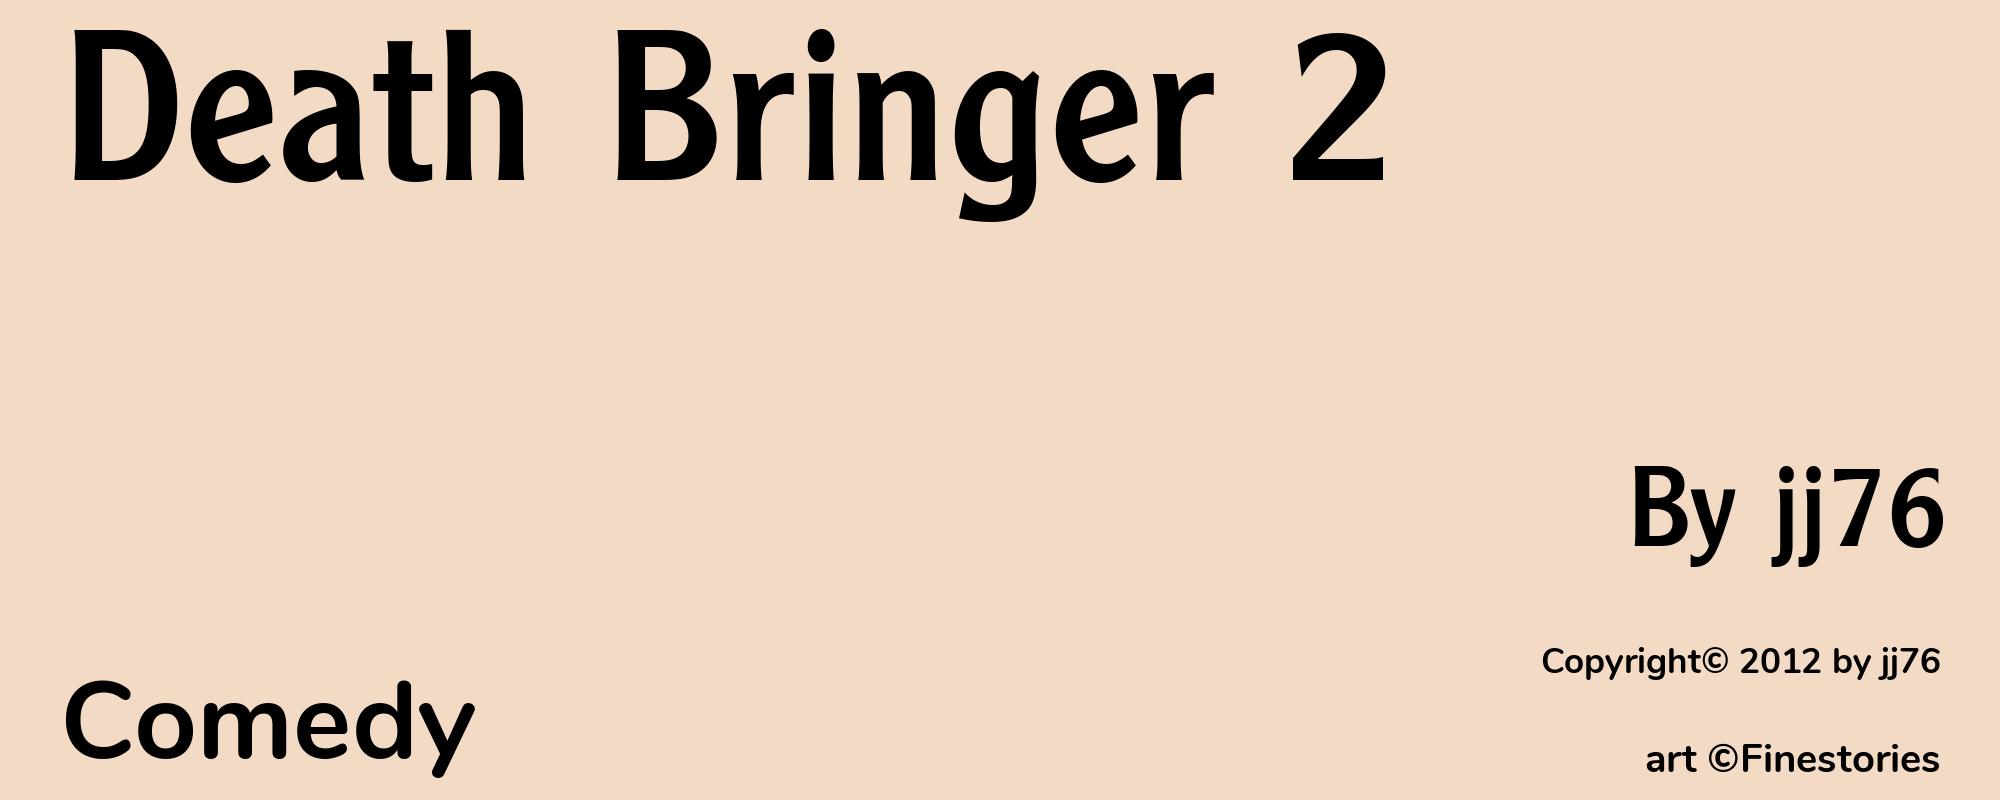 Death Bringer 2 - Cover